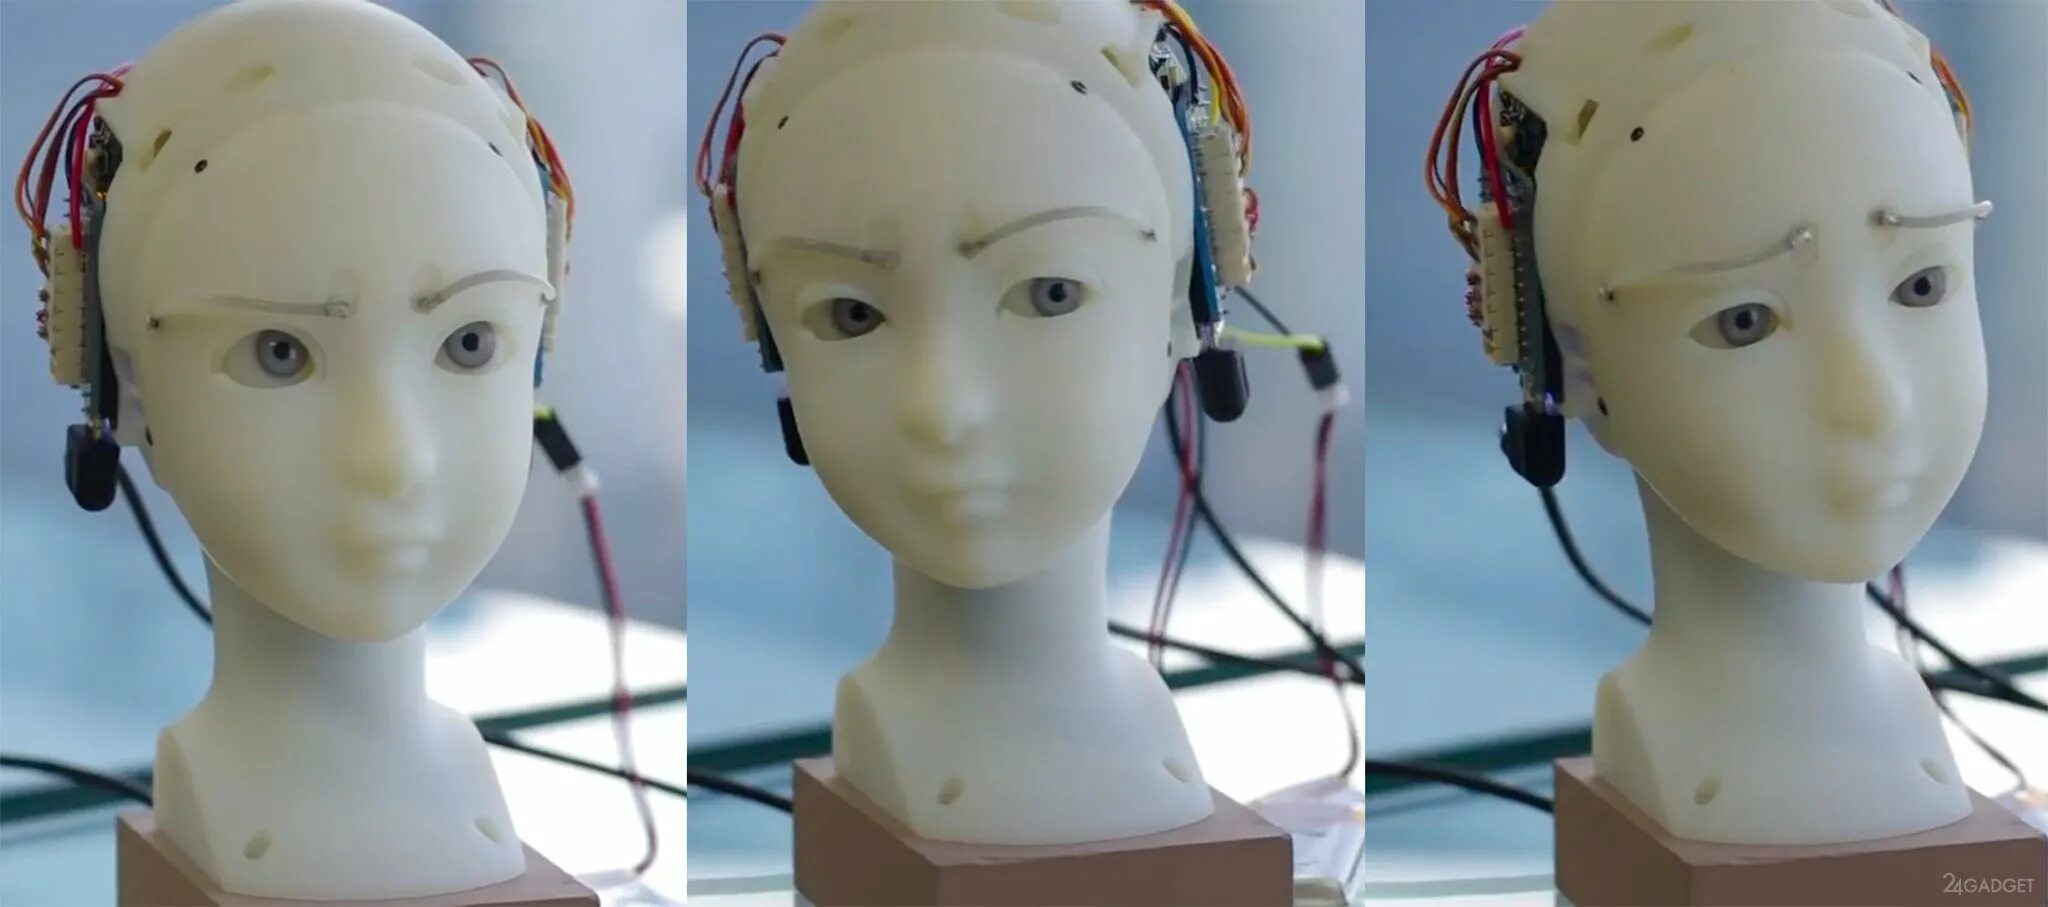 Simulative. Робот Eva имитирующий эмоции человека. Прототип робота. Seer Robot. Робот Eva имитирующий эмоции человека создатель.